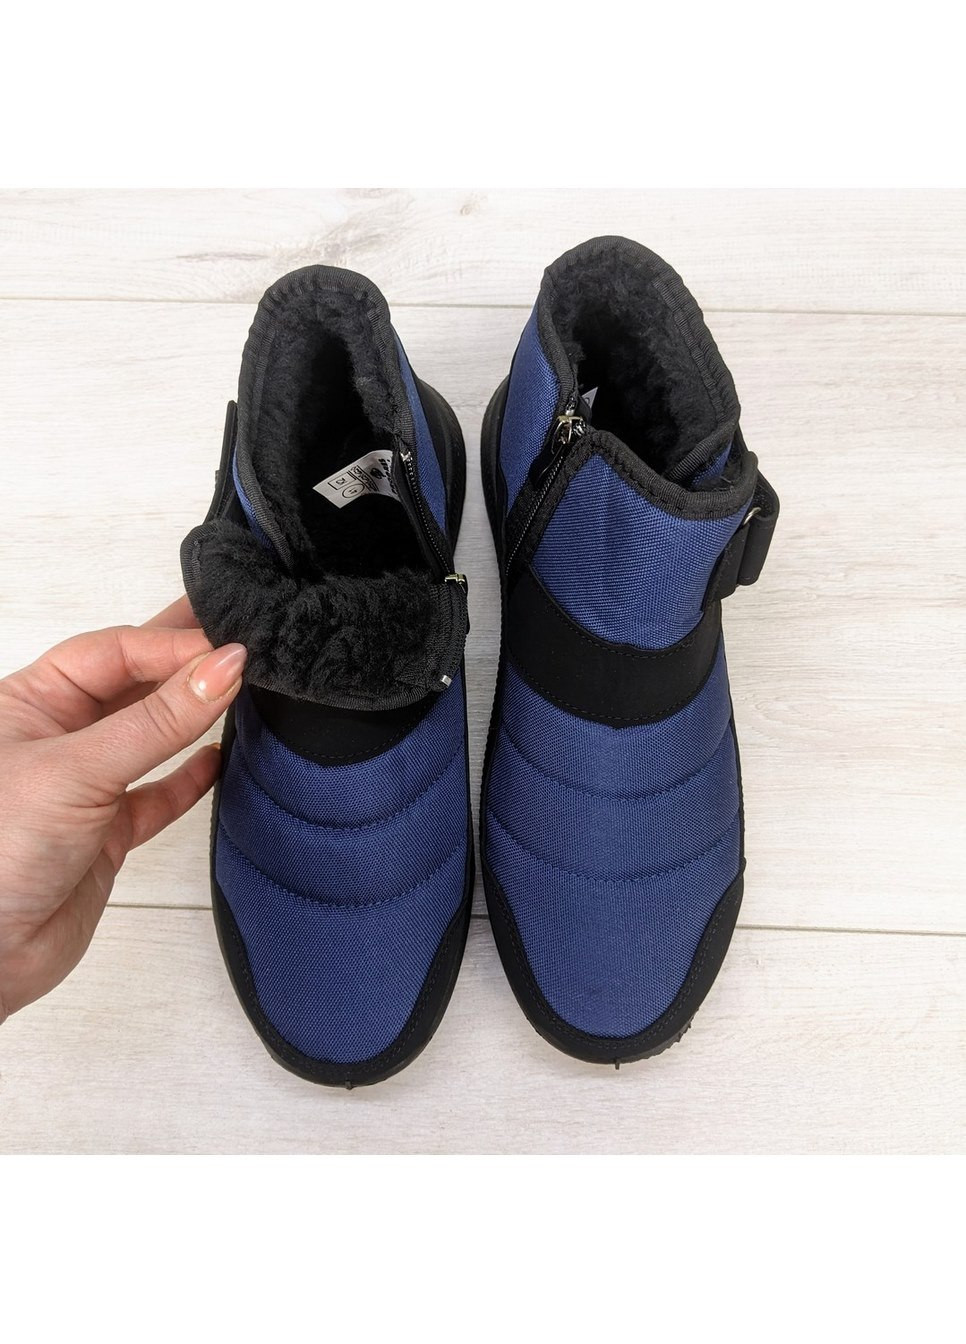 Синие зимние ботинки мужские дутики зимние на молнии Progress